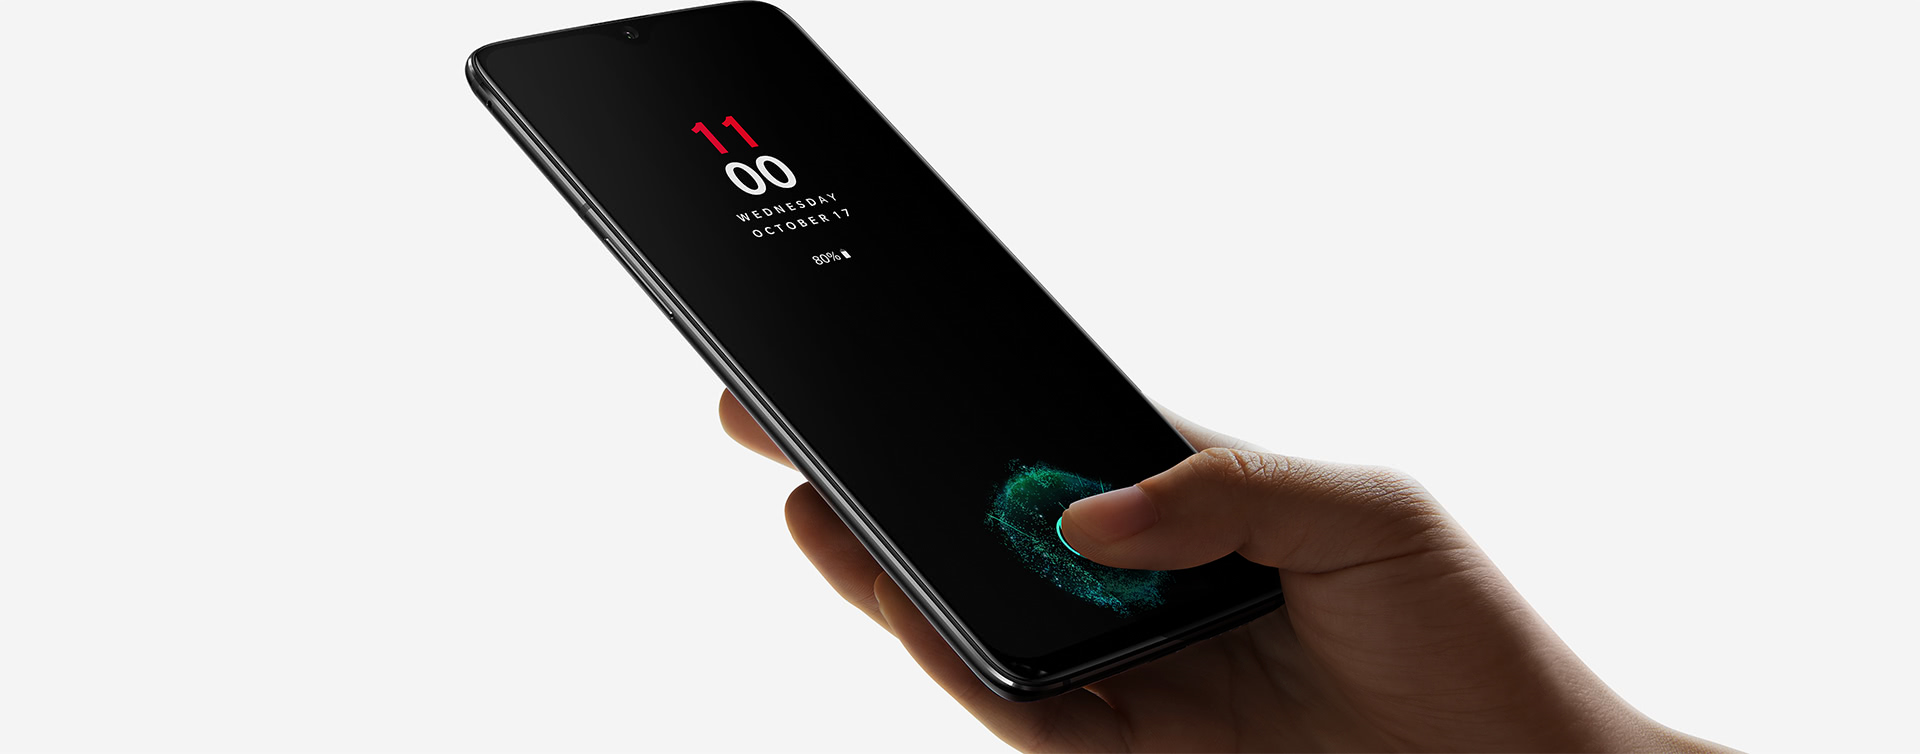 Le capteur d'empreinte digitale sous la surface de l'écran est la principale innovation de ce OnePlus 6T. Son prix reste contenu étant donné les composants qu'il renferme. © OnePlus